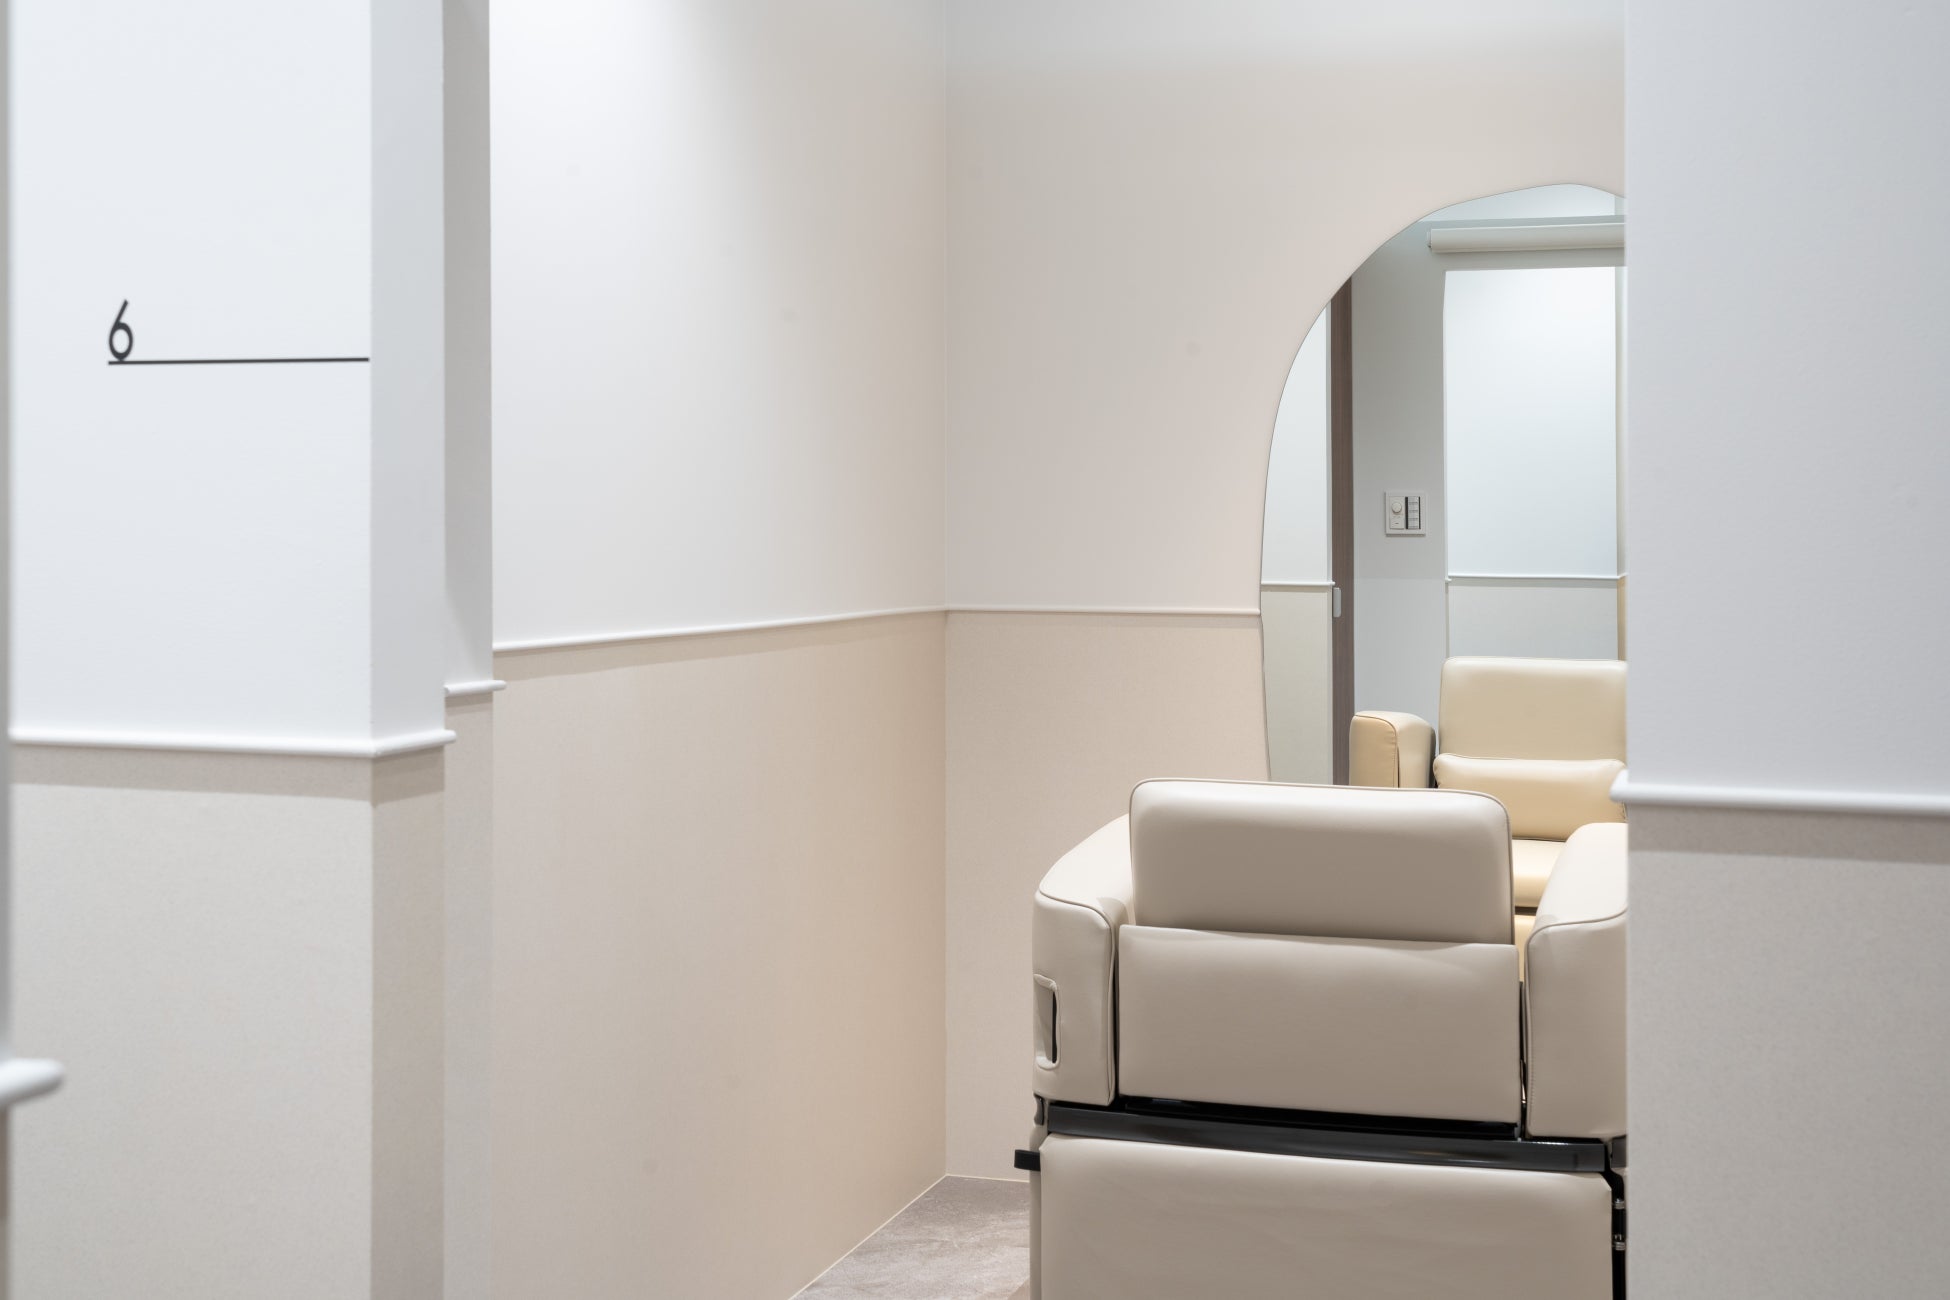 【お客様とあなただけのプレミアム空間】個室内を自由に装飾できる、個室占有型シェアサロン「SALOWIN Suite」提供開始